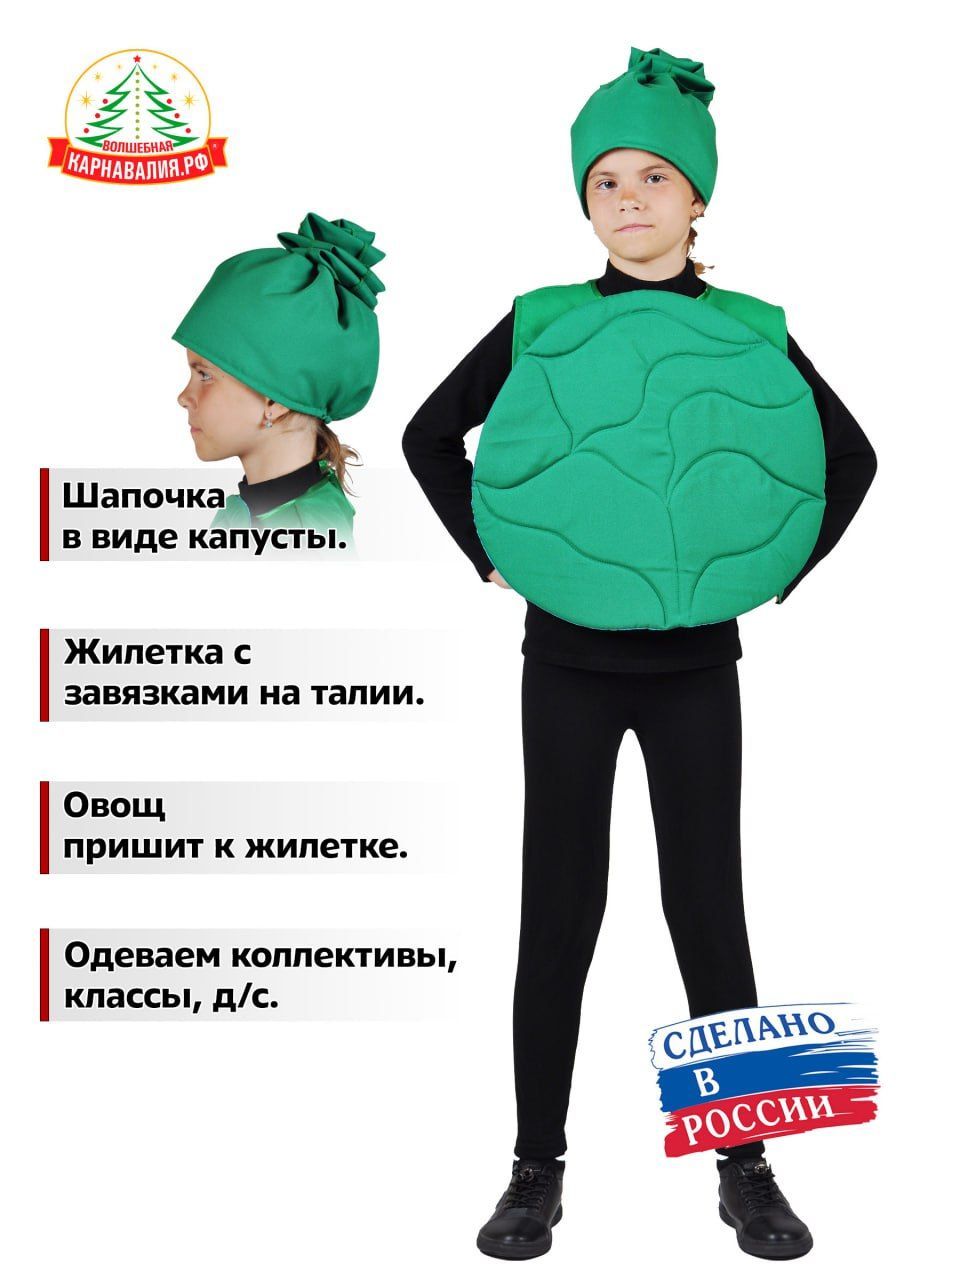 Купить детские костюмы овощей и фруктов в Москве, цена в интернет магазине